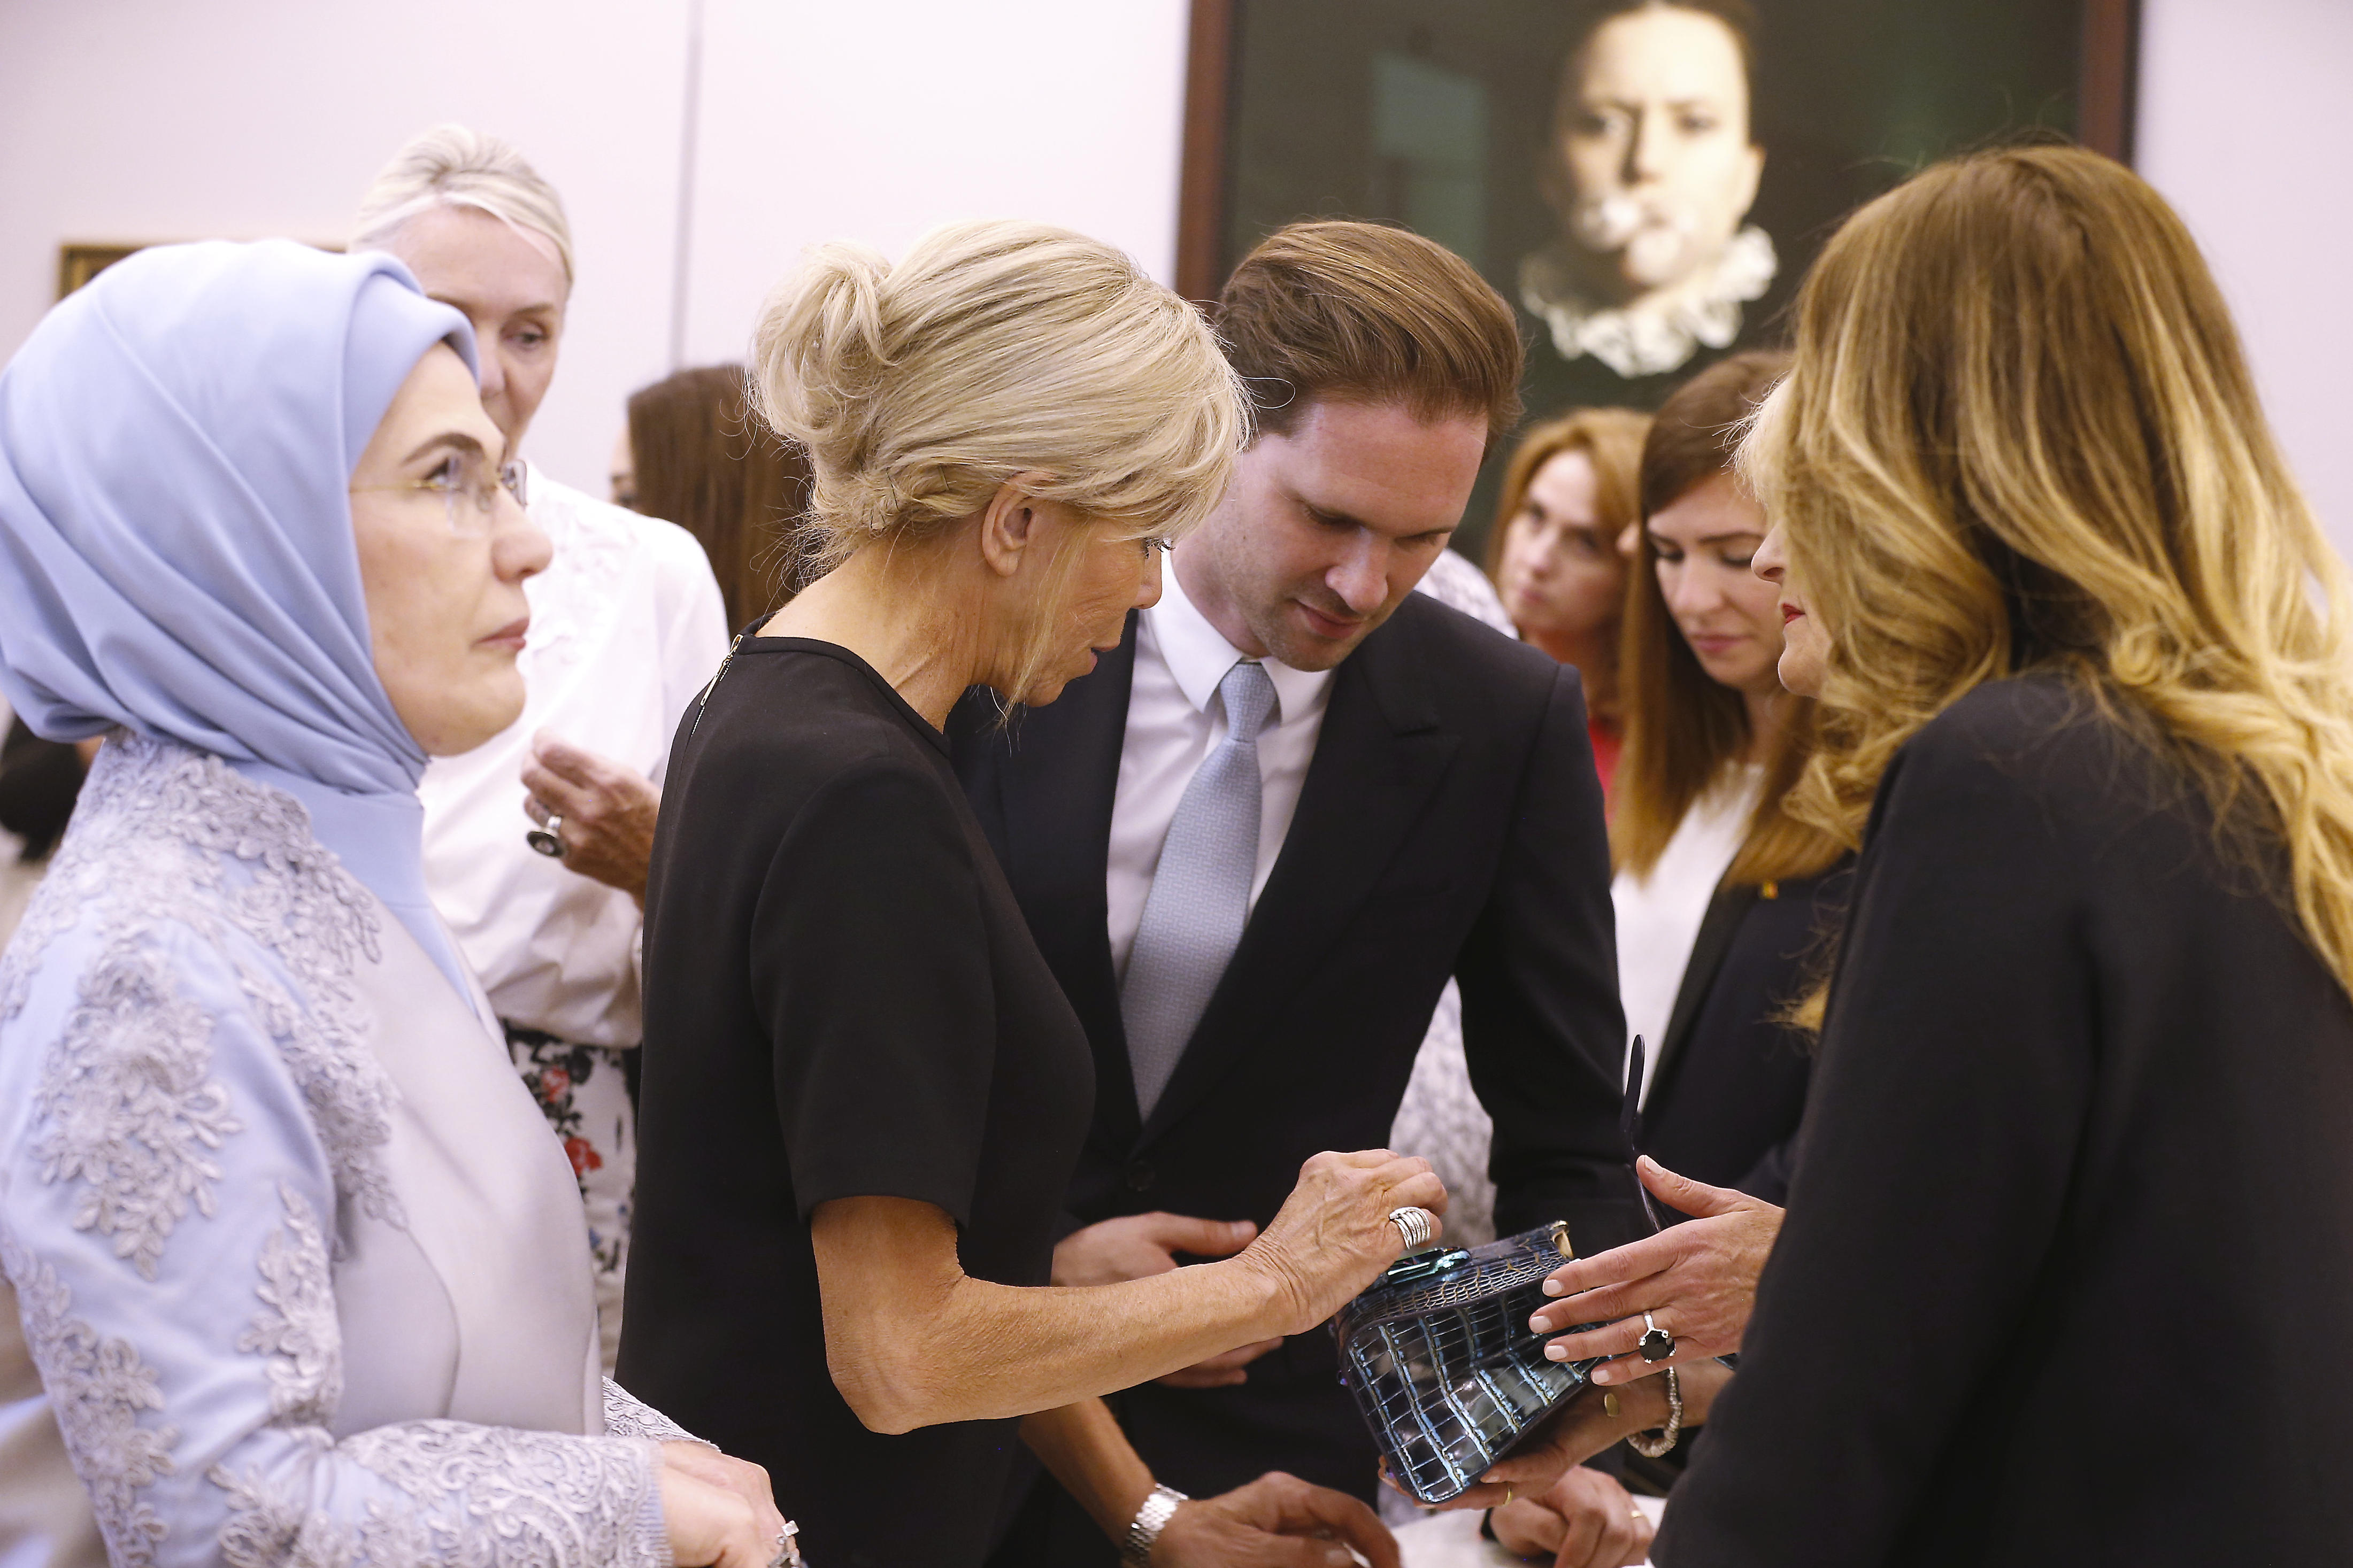 Luxemburg meleg miniszterelnökének férje jól érzi magát a first ladyk közt